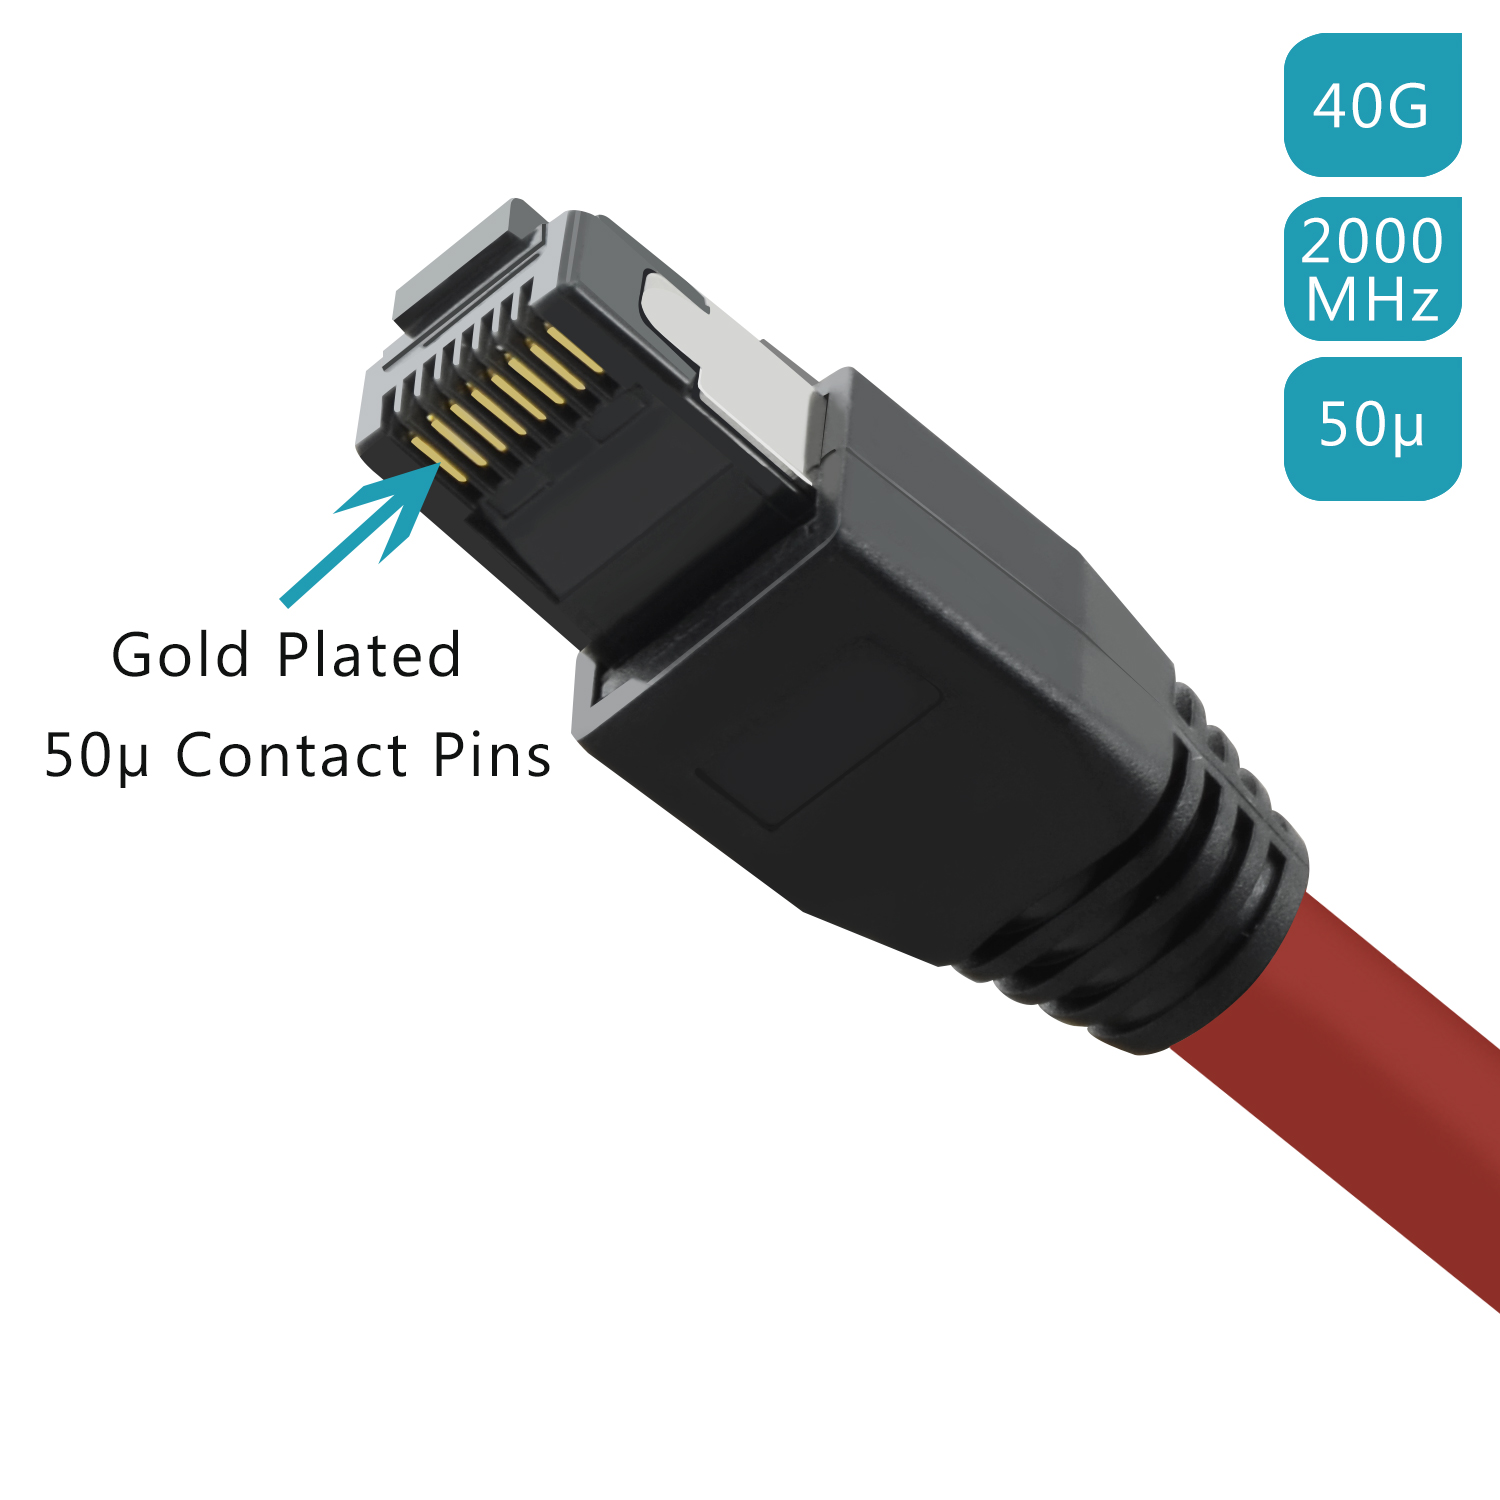 TPFNET 0,25m Patchkabel / Netzwerkkabel 0,25 rot, Netzwerkkabel, 40 GBit, m S/FTP